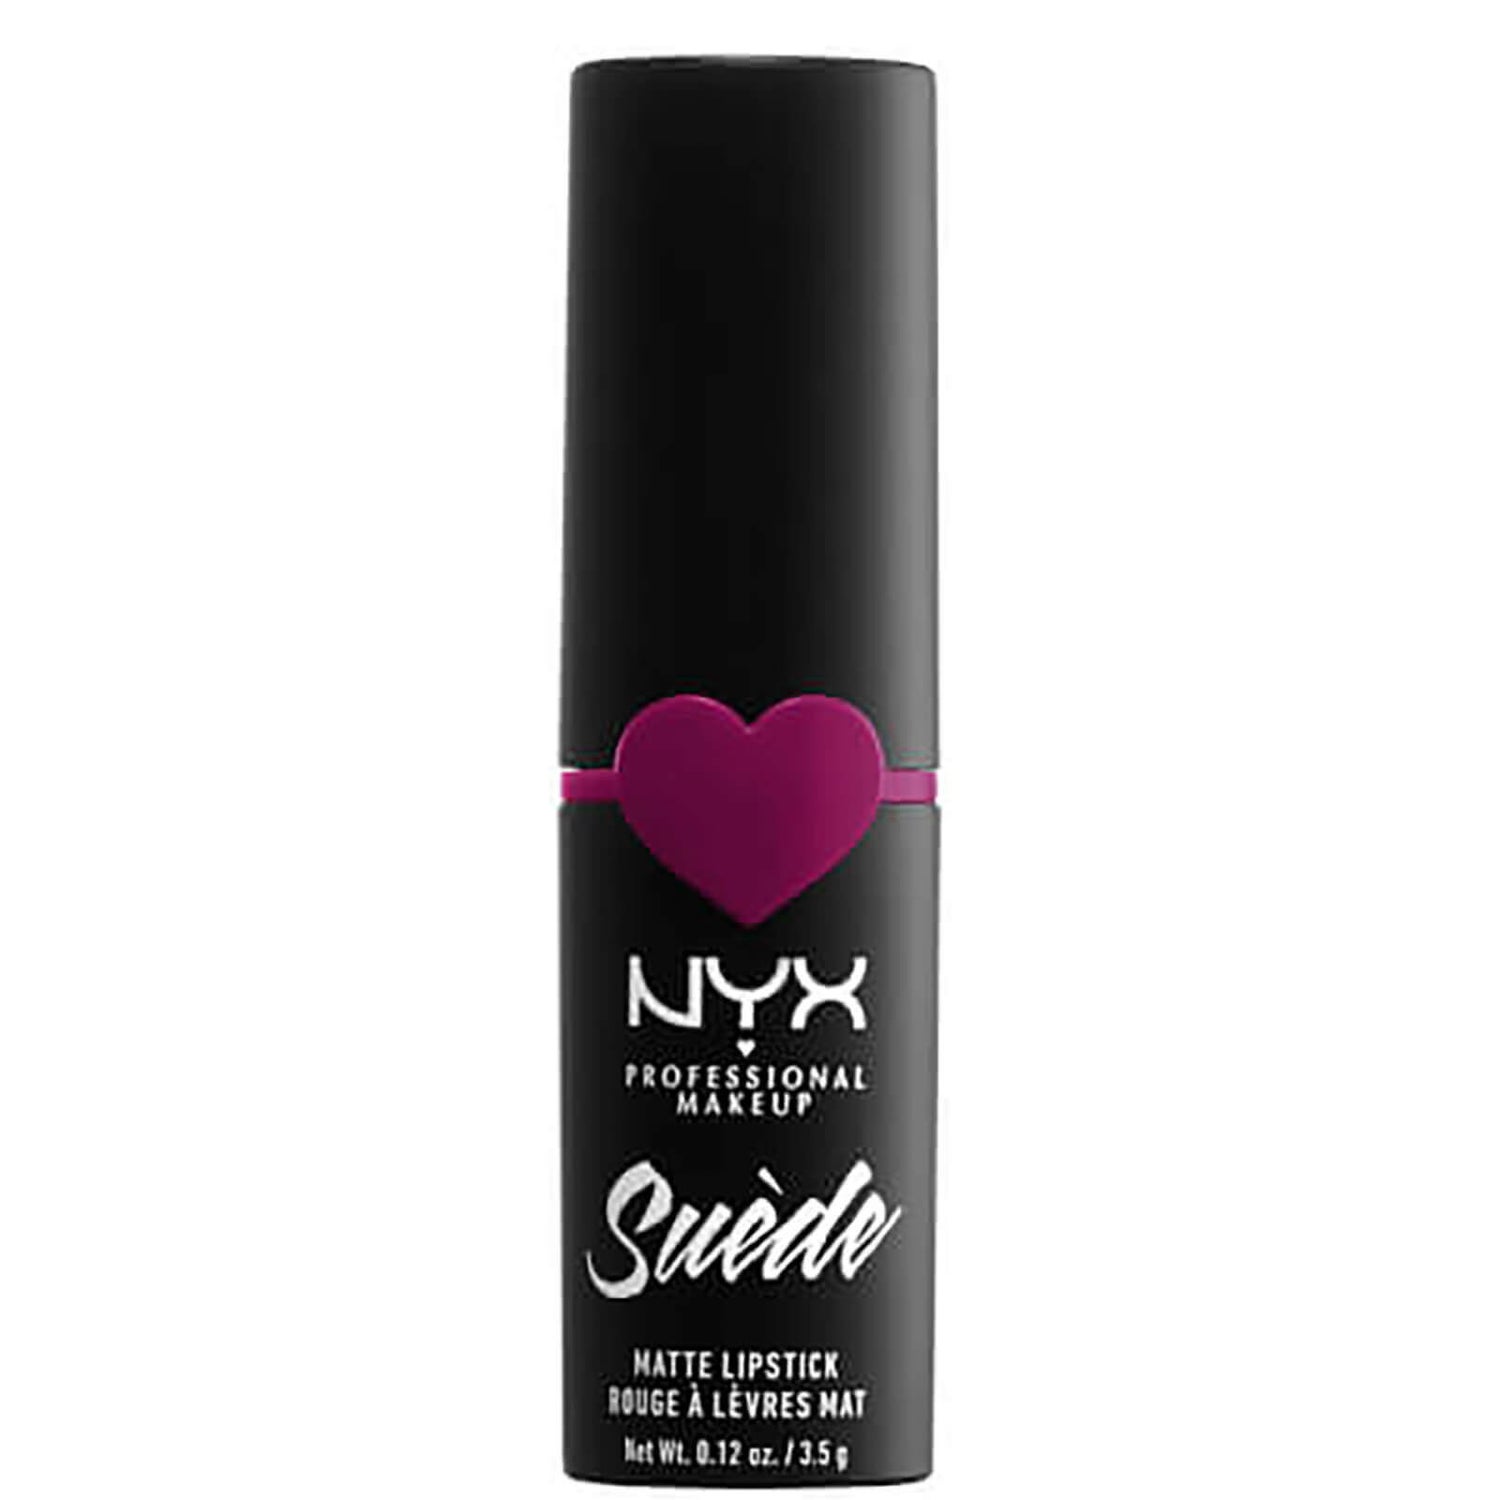 NYX Professional Makeup スエード マット リップスティック (多色)